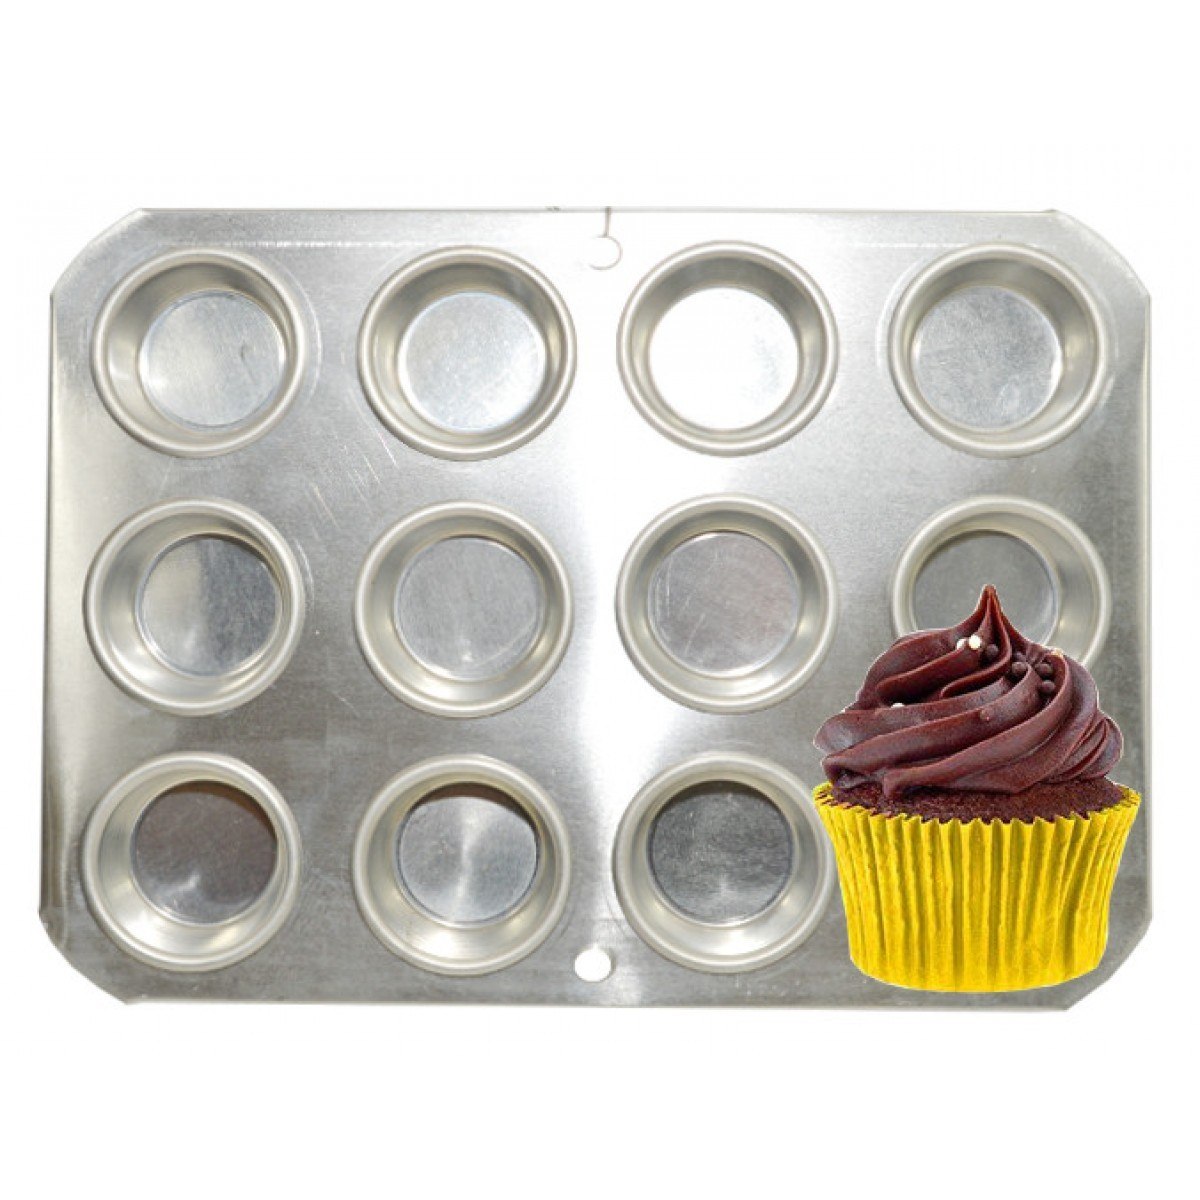 Forma Para Mini Cupcake 12 Cavidades Em Aluminio R 24 49 Em